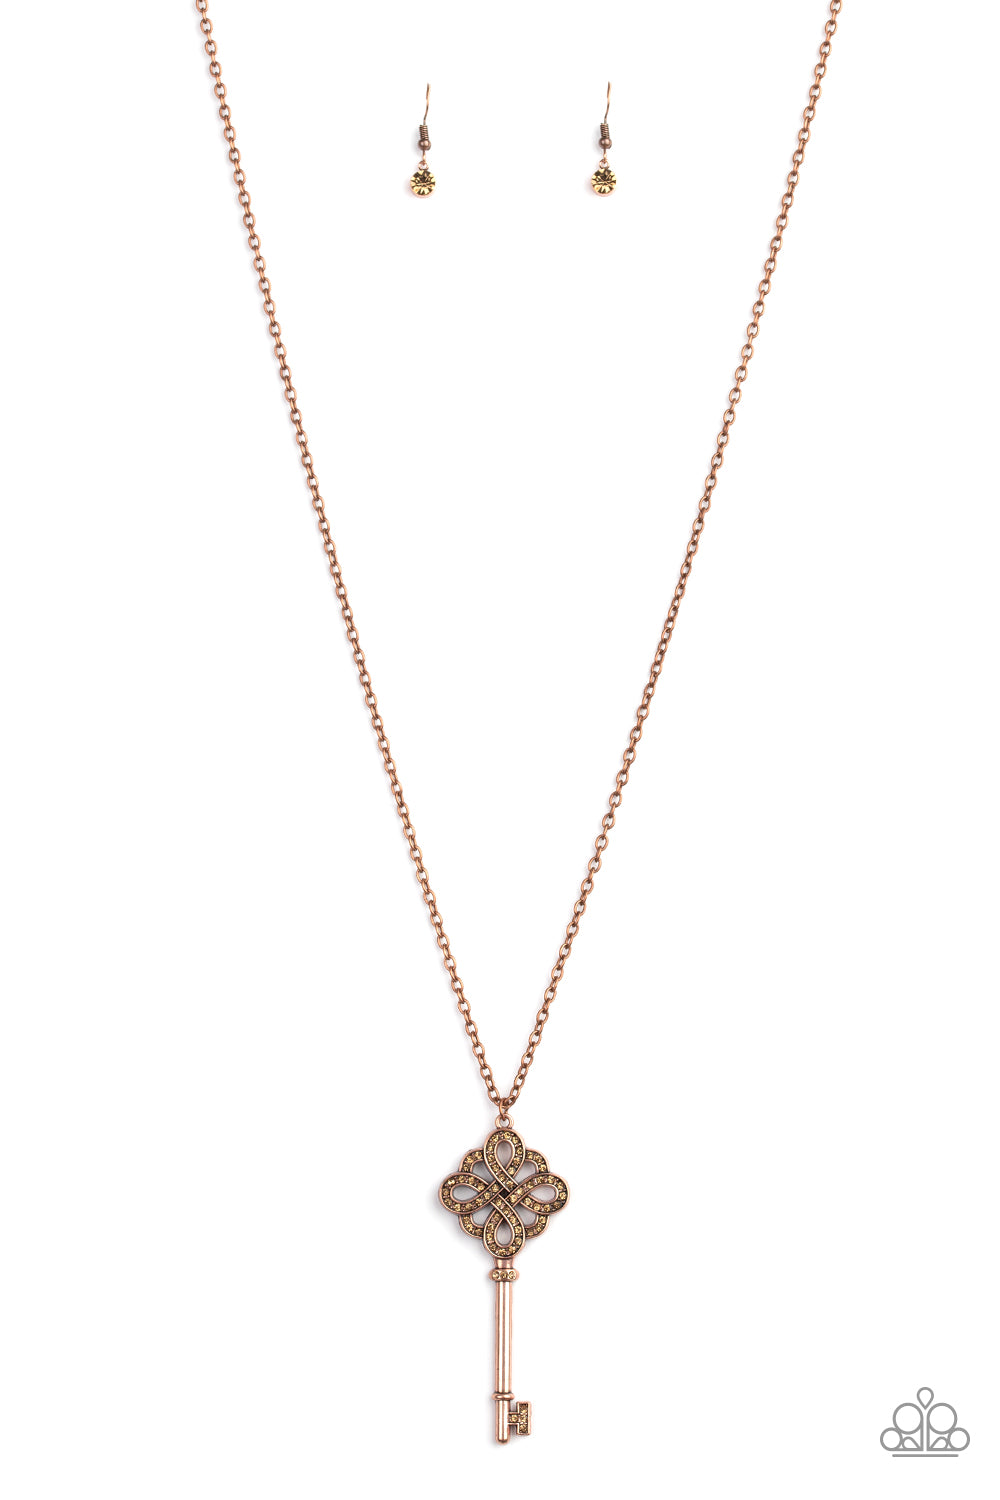 Treasure Tease-Copper Necklace-Paparazzi Accessories